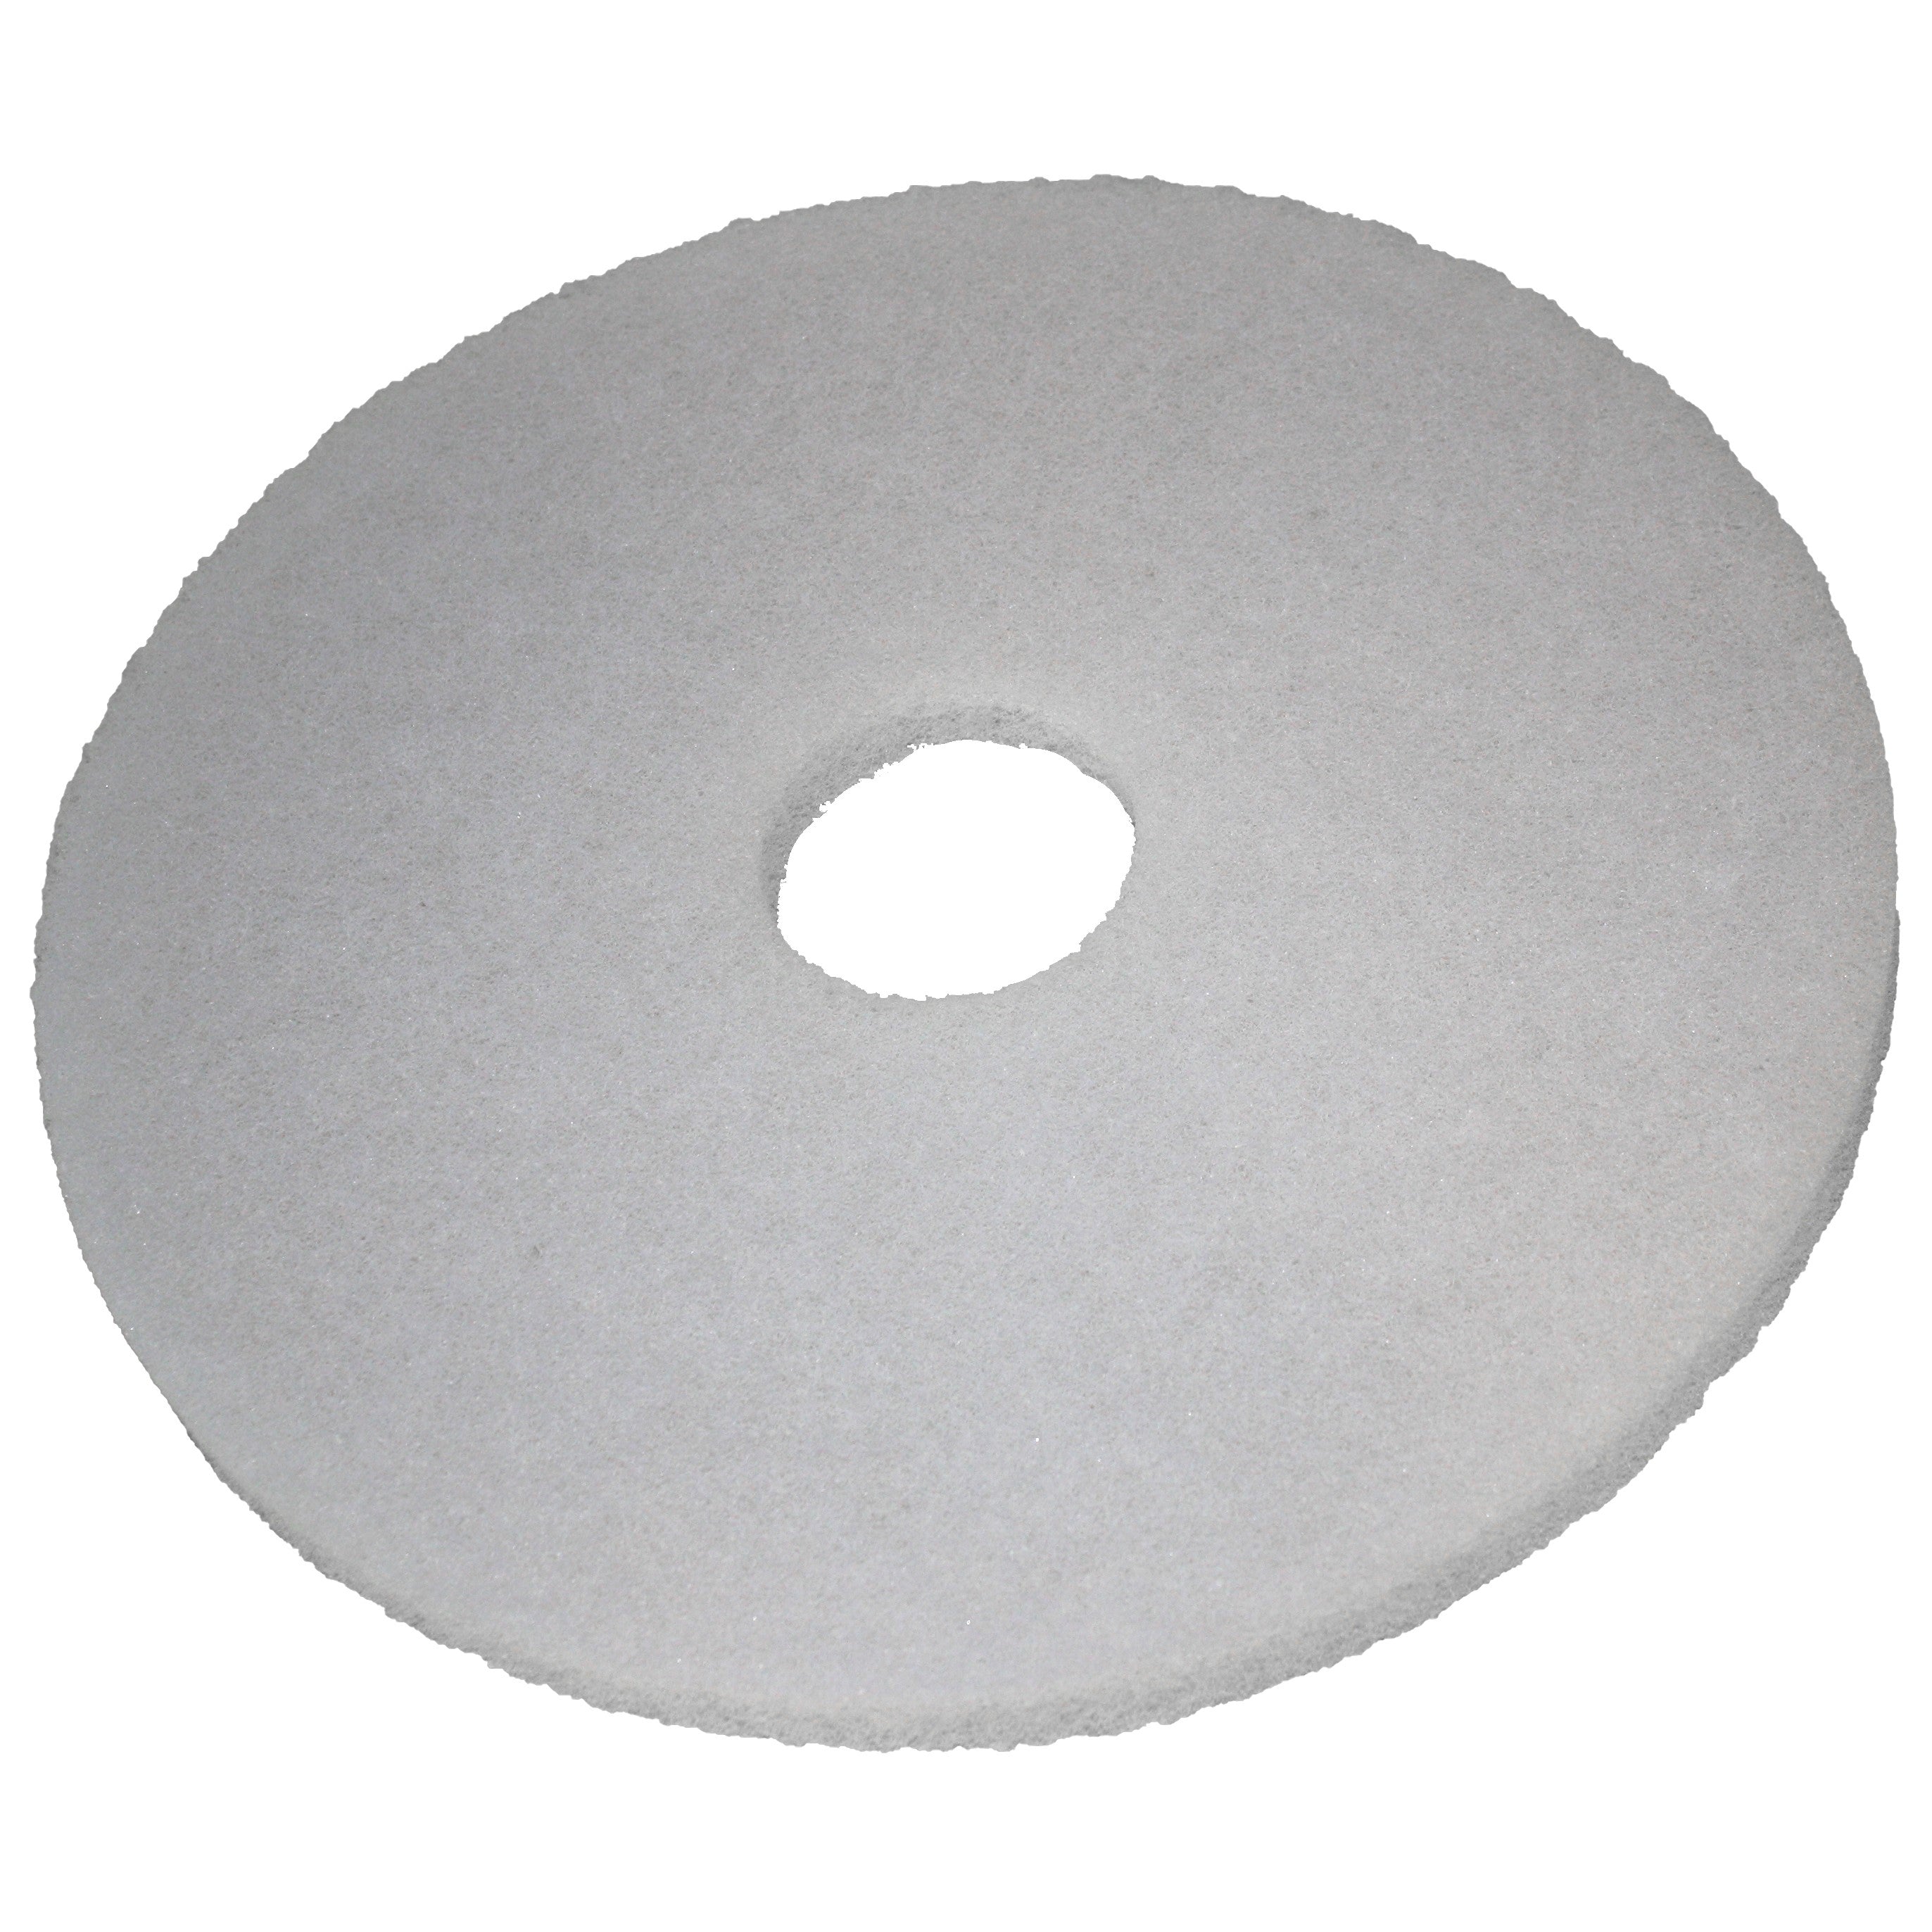 Pad blanc, Ø 406 mm, polyester